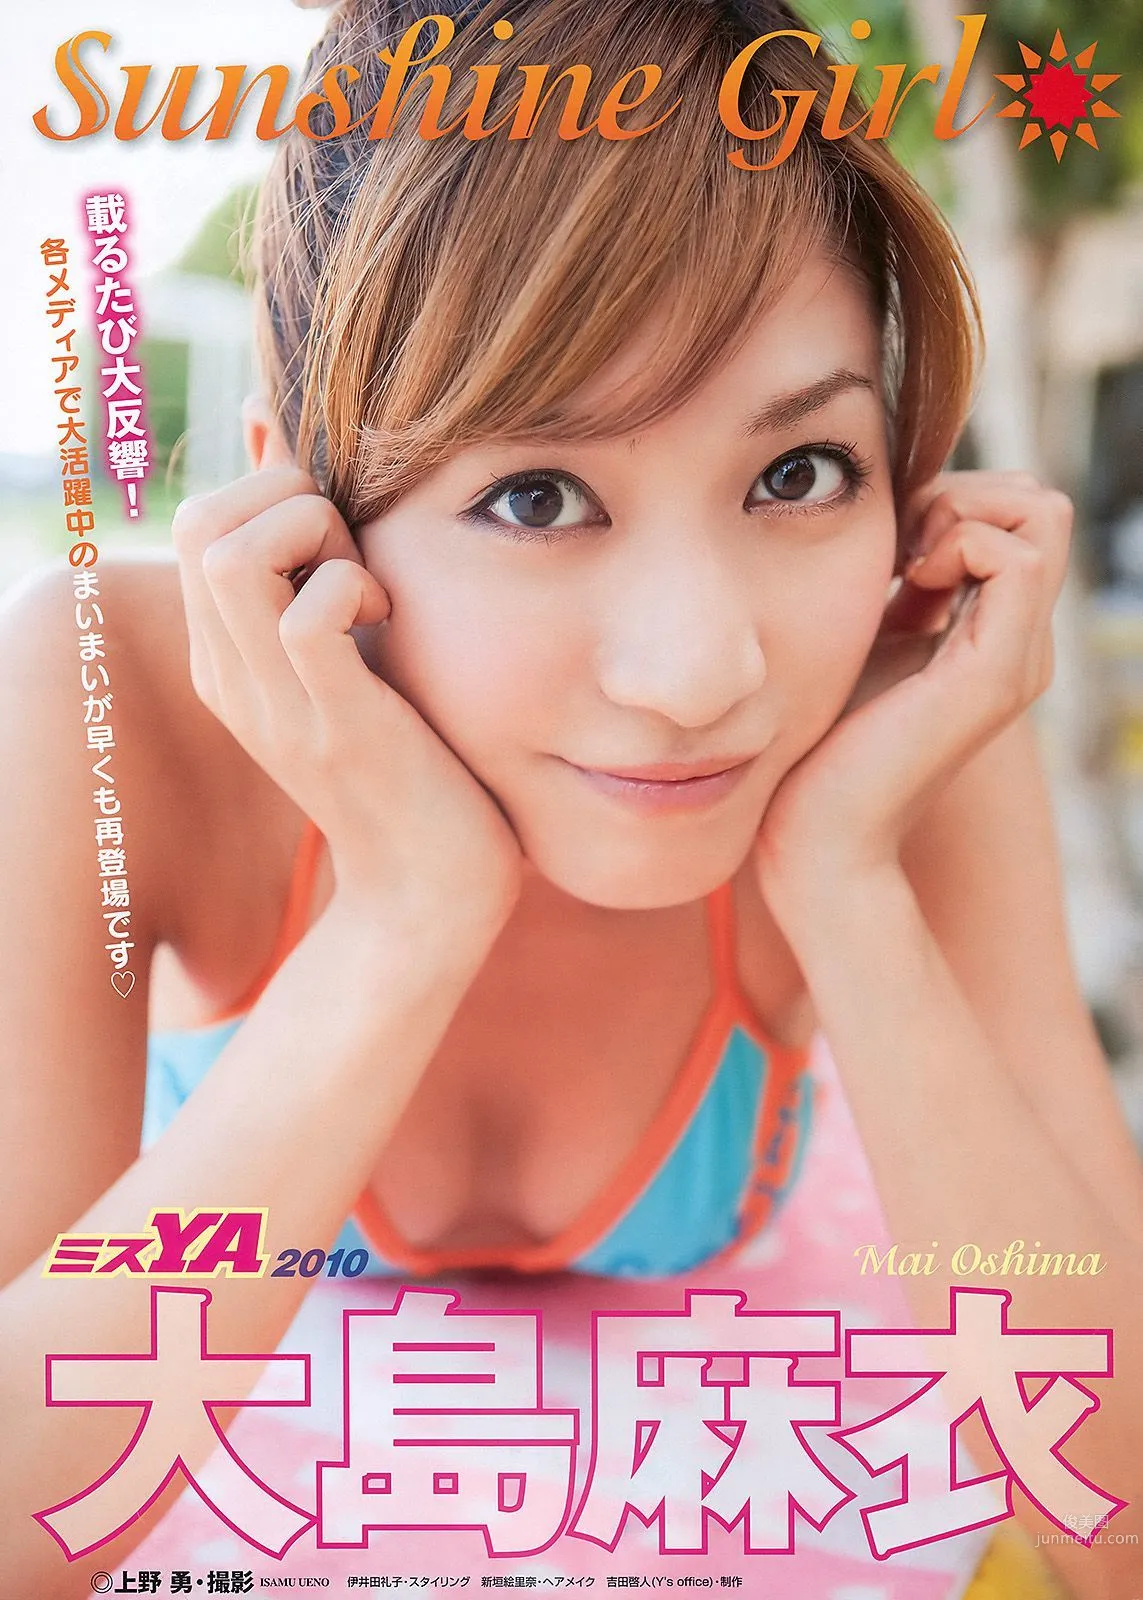 大島麻衣 SKE48 初音みのり Maika 柚木Rio [Young Animal] 2010年No.21 写真杂志2